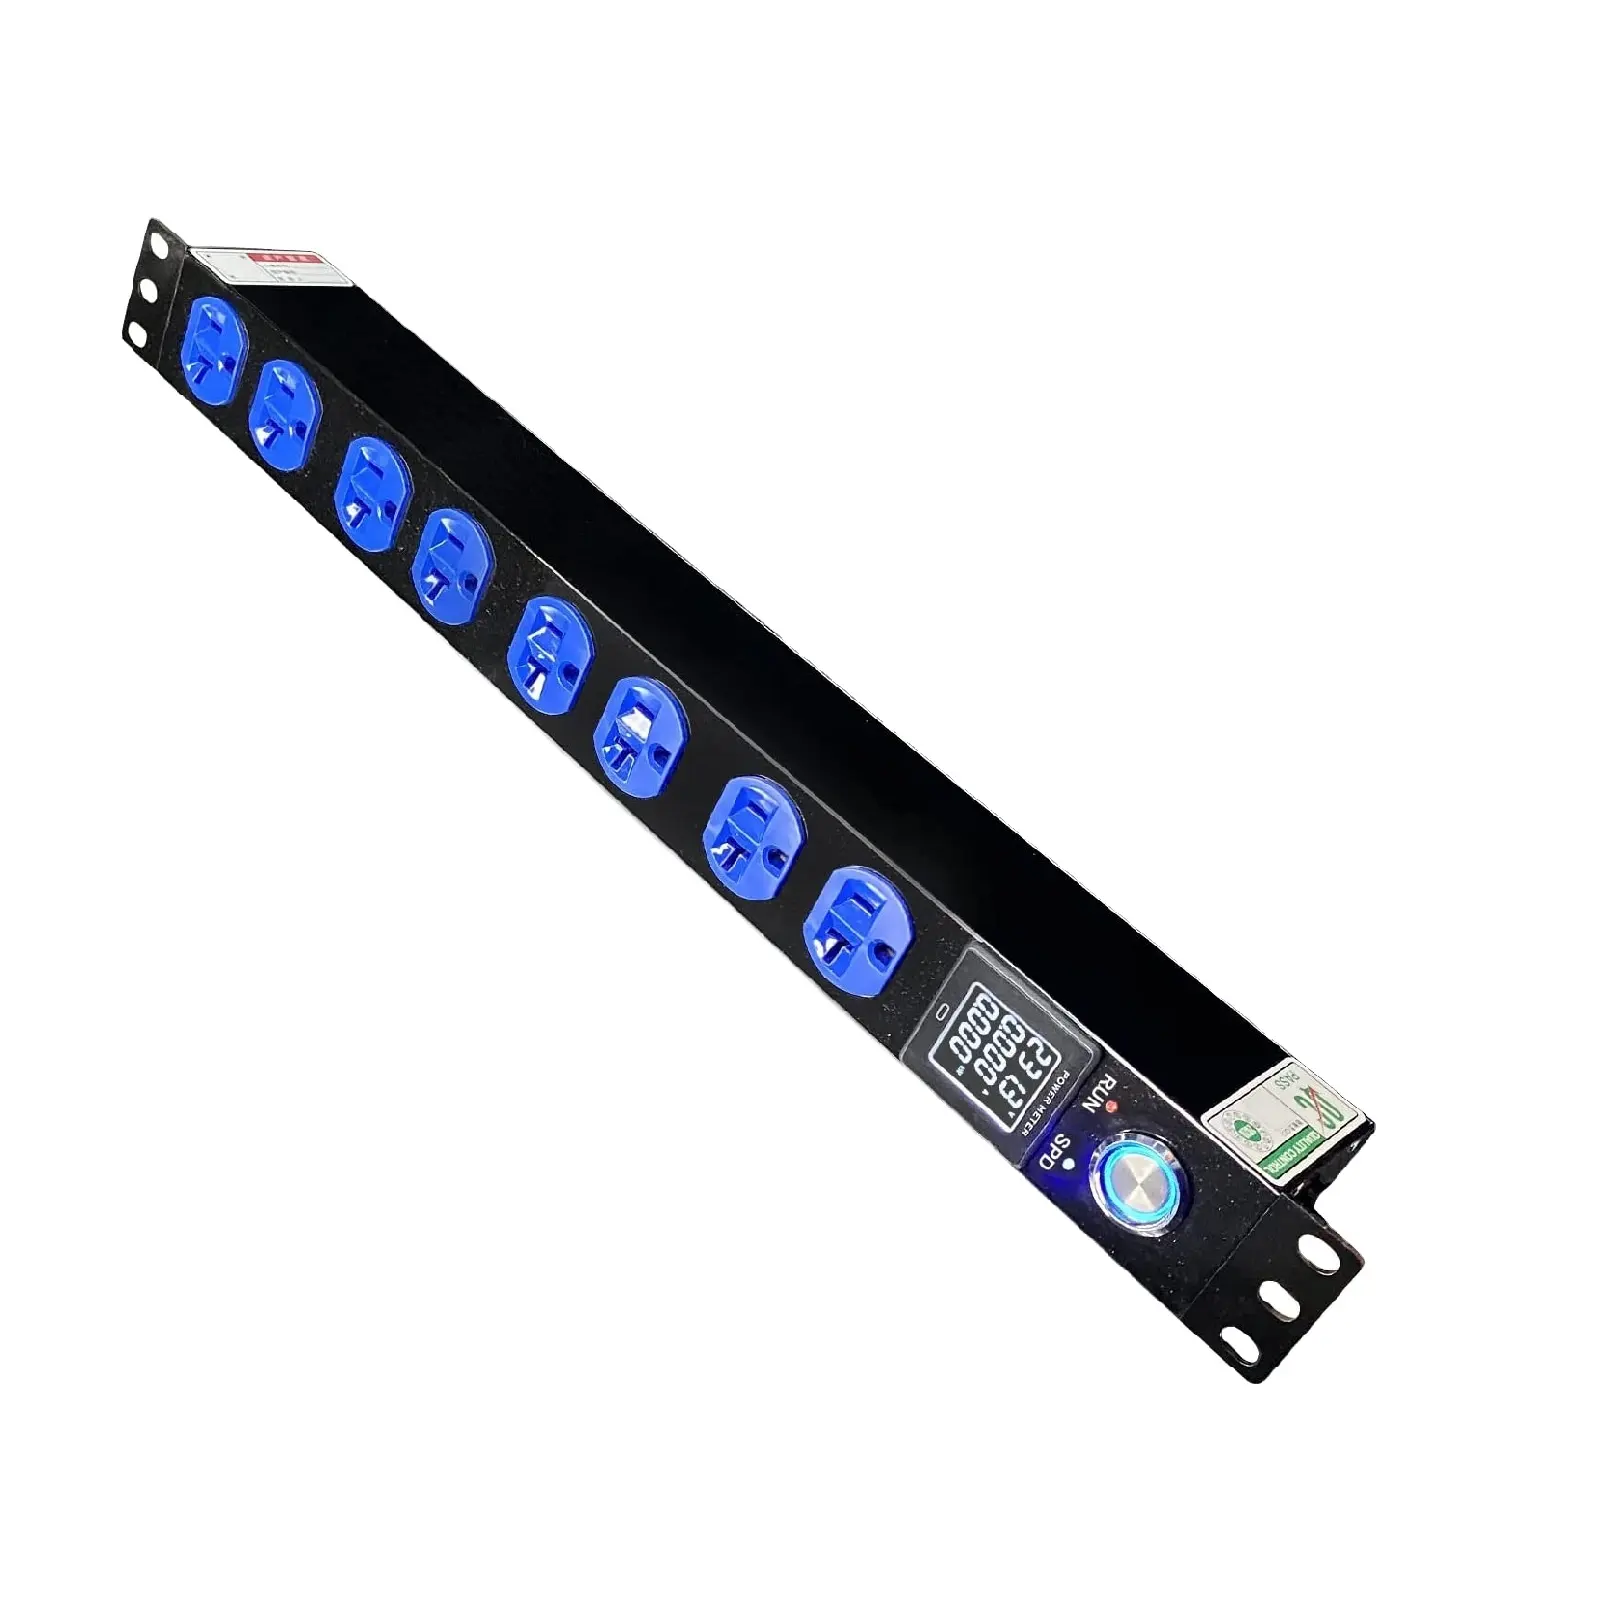 Unità di distribuzione dell'alimentazione 19 ''1U Power Strip Rack Mount 8 nema 5-20R presa con protezione contro le sovratensioni PDU con schermo OLED